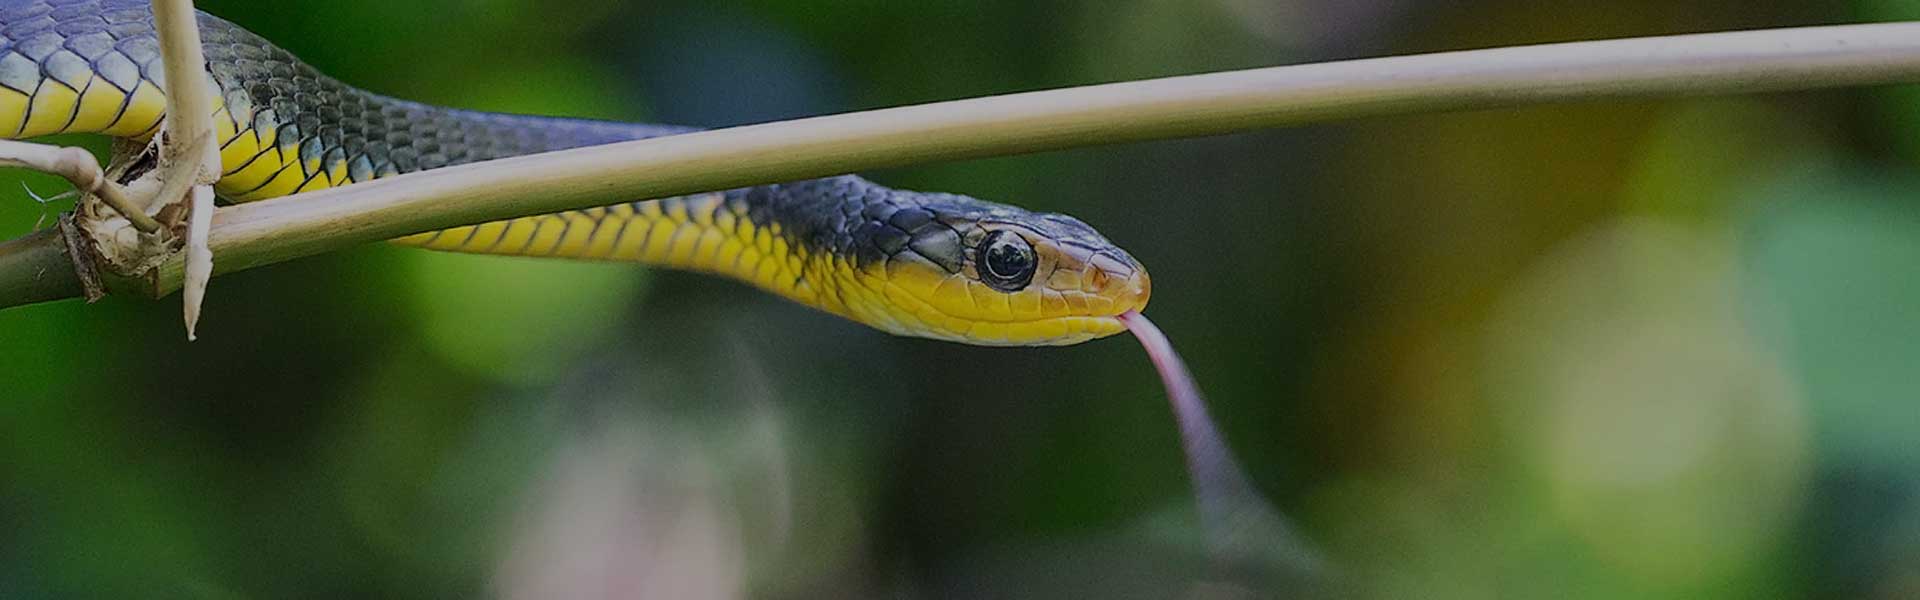 snake-banner